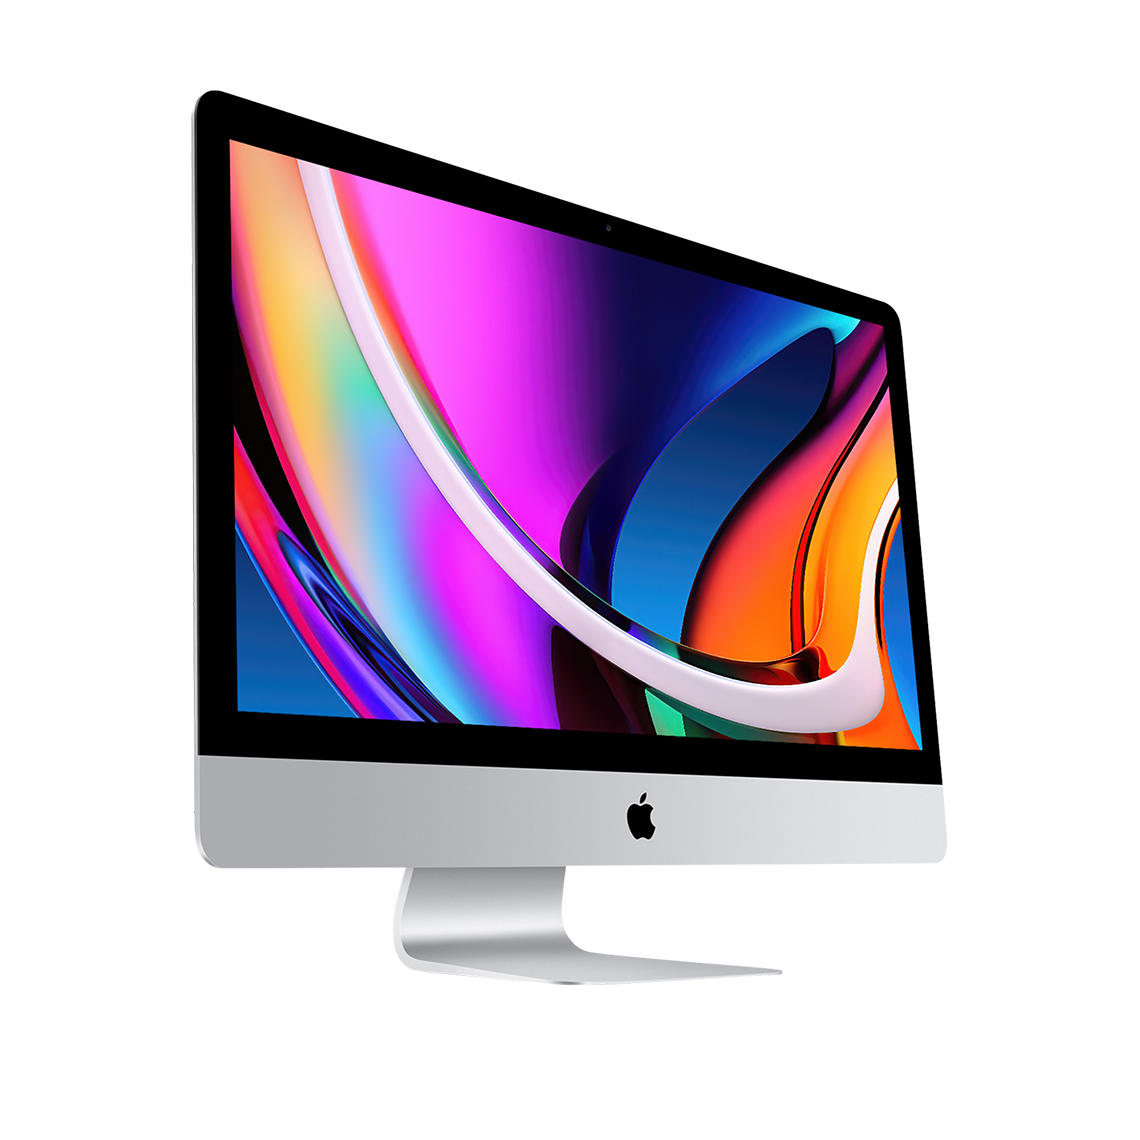 2020 iMac 27-inch 5K - Intel Core i9, 32GB, 1TB Flash, Radeon Pro 5500XT 8GB, Grade A